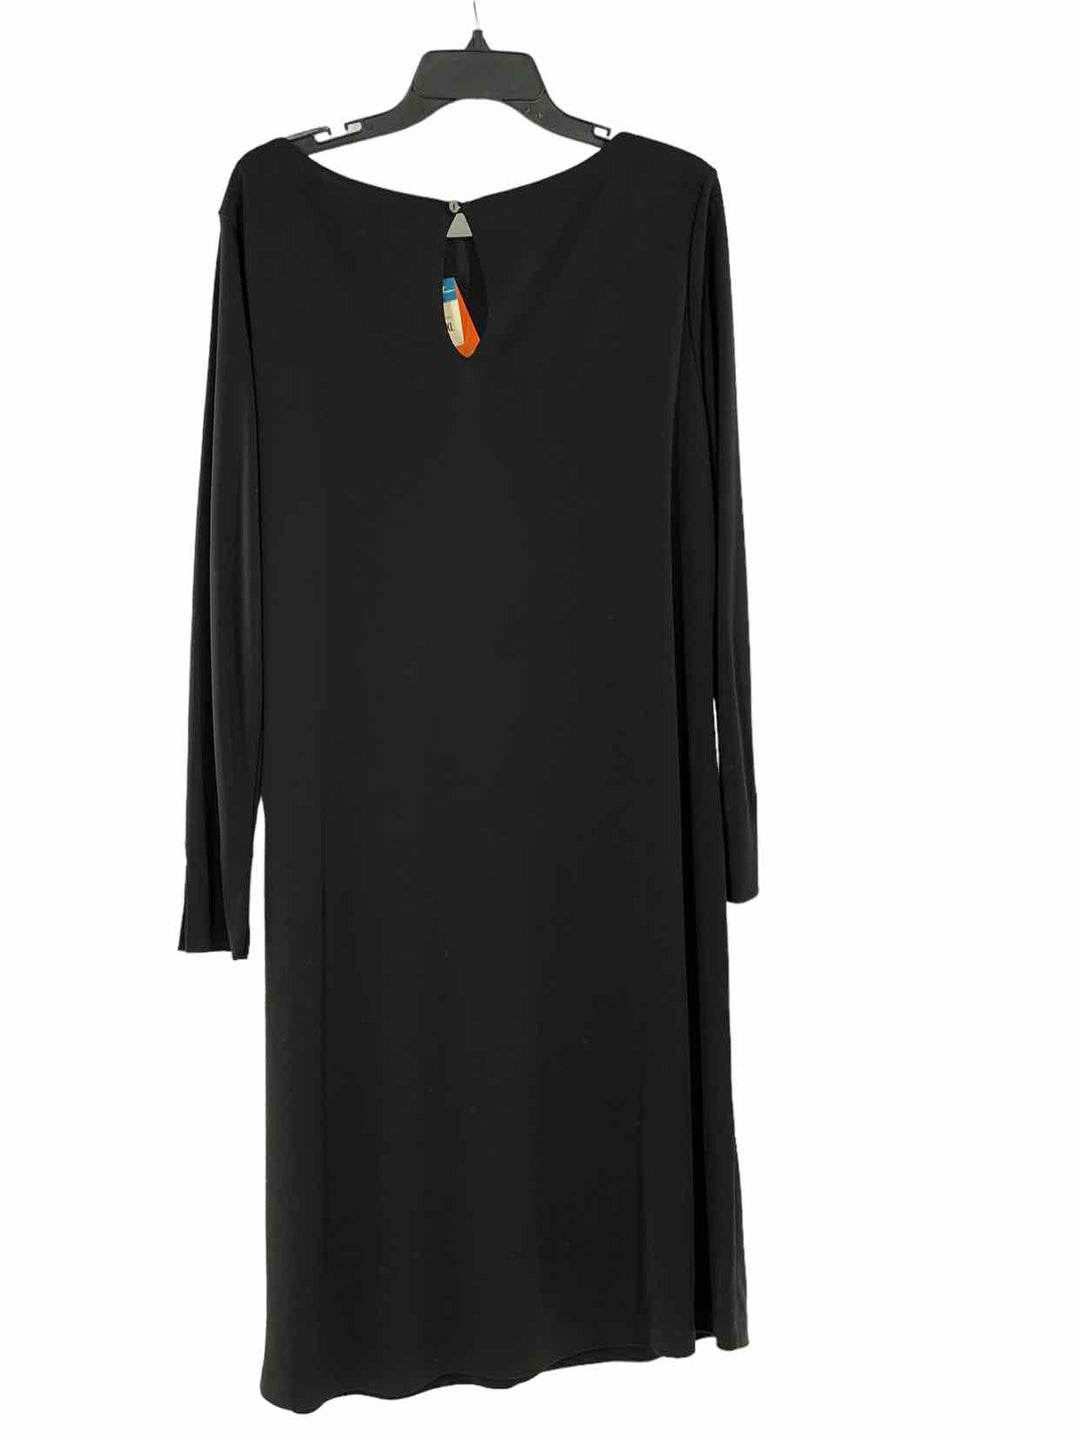 Eddie Bauer Size XL Black Dress